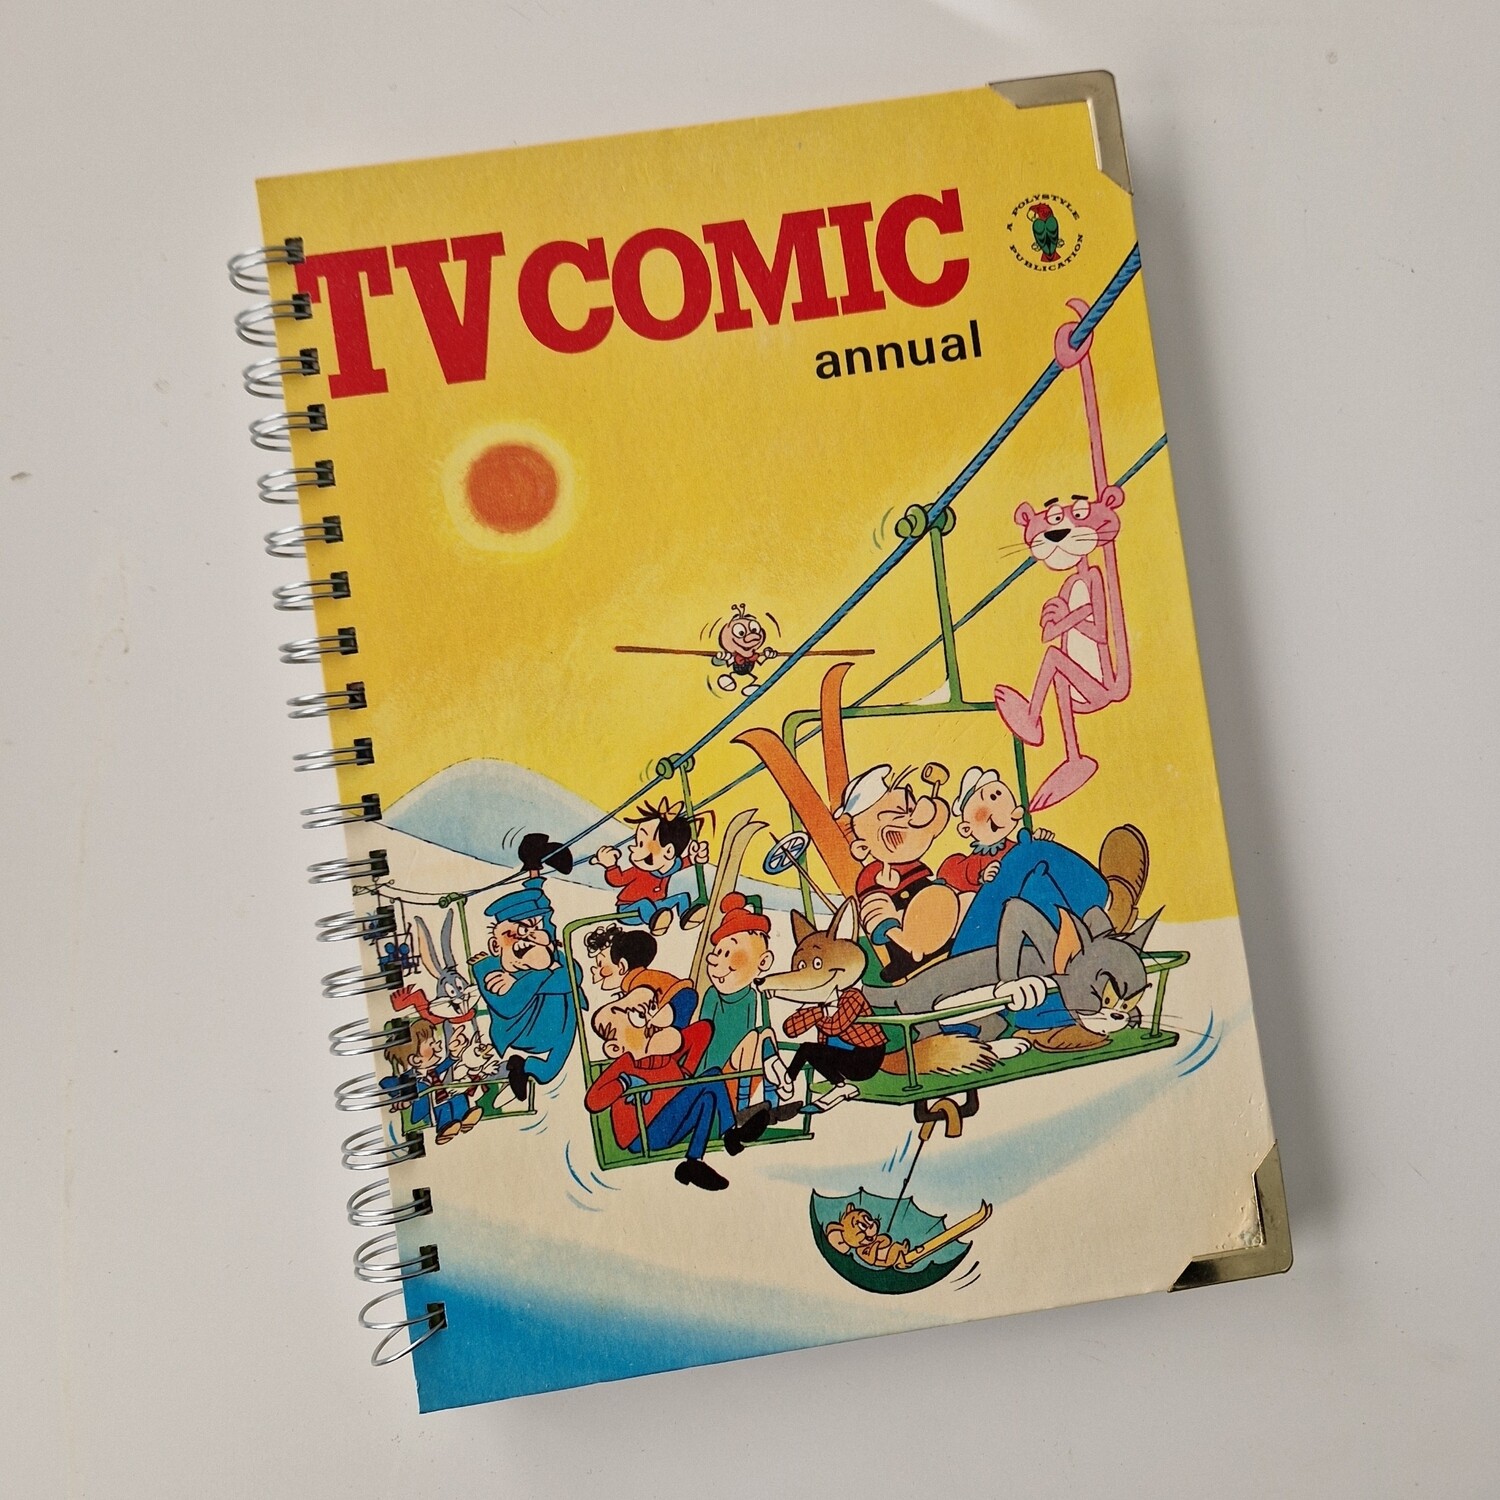 TV Comic Annual 1971 notebook